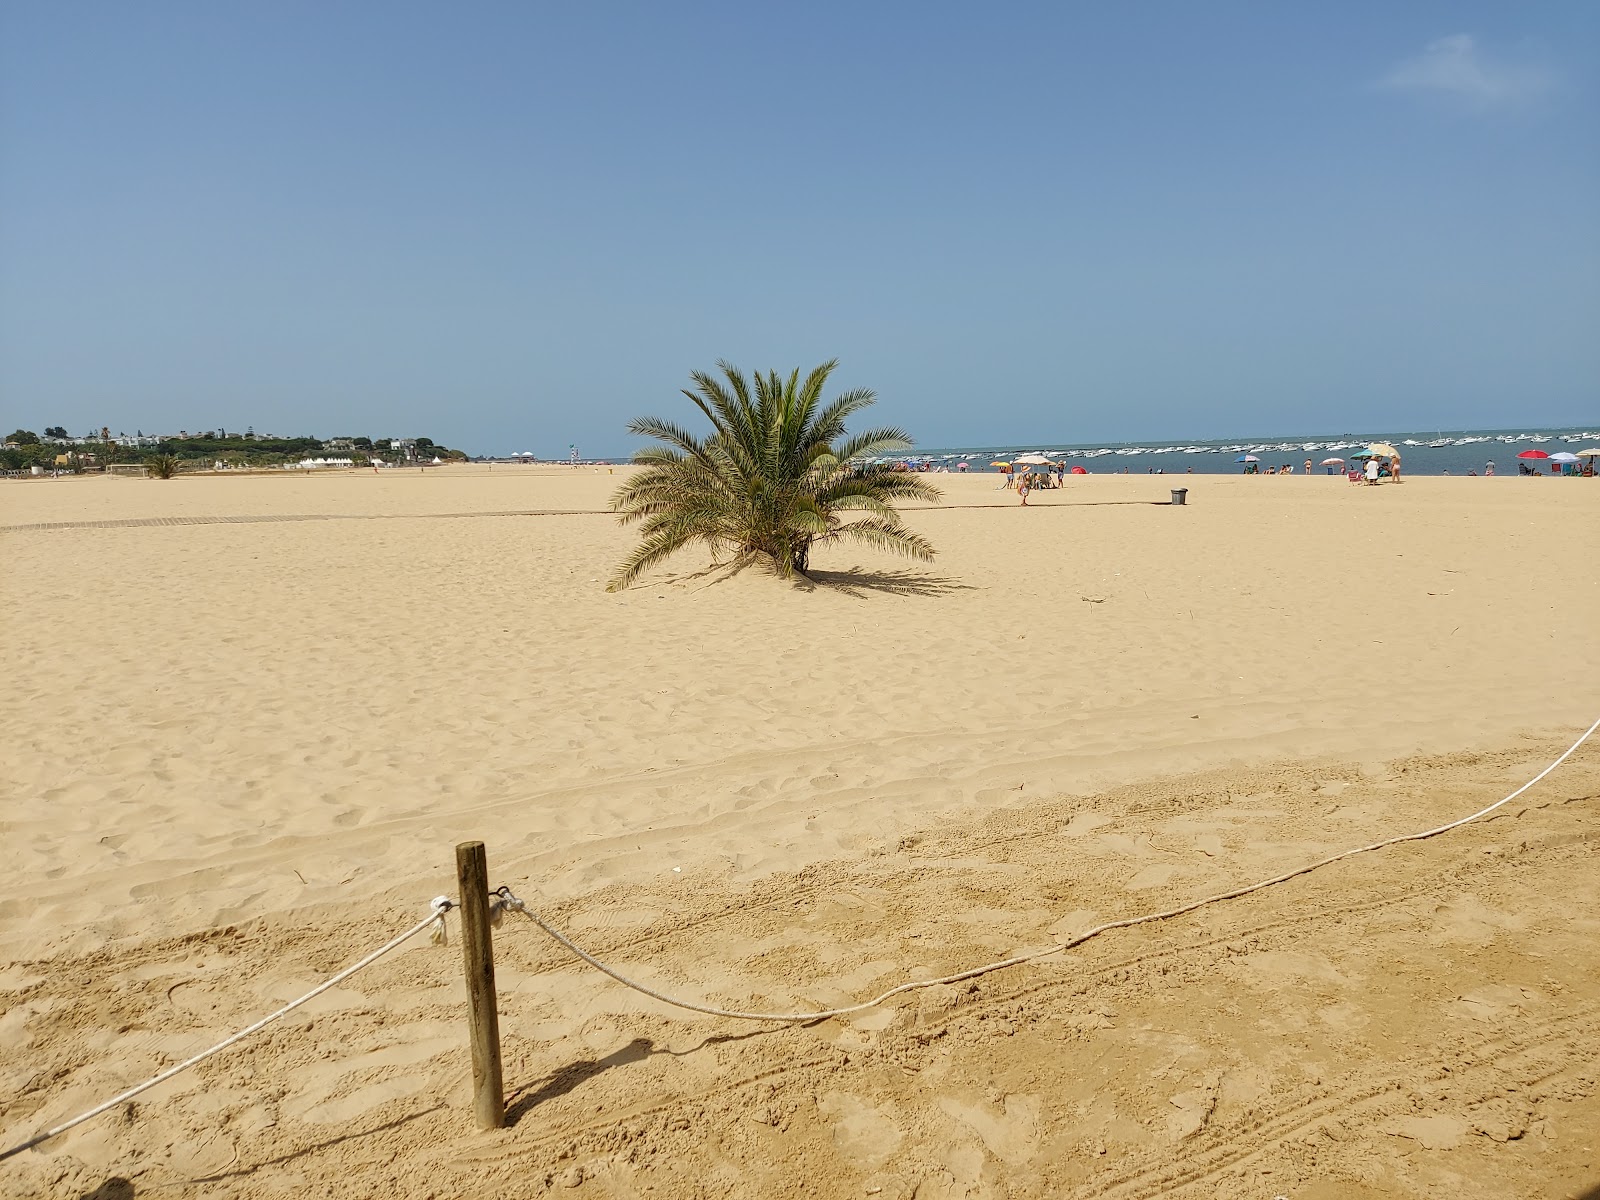 Foto af Playa de las Piletas - populært sted blandt afslapningskendere